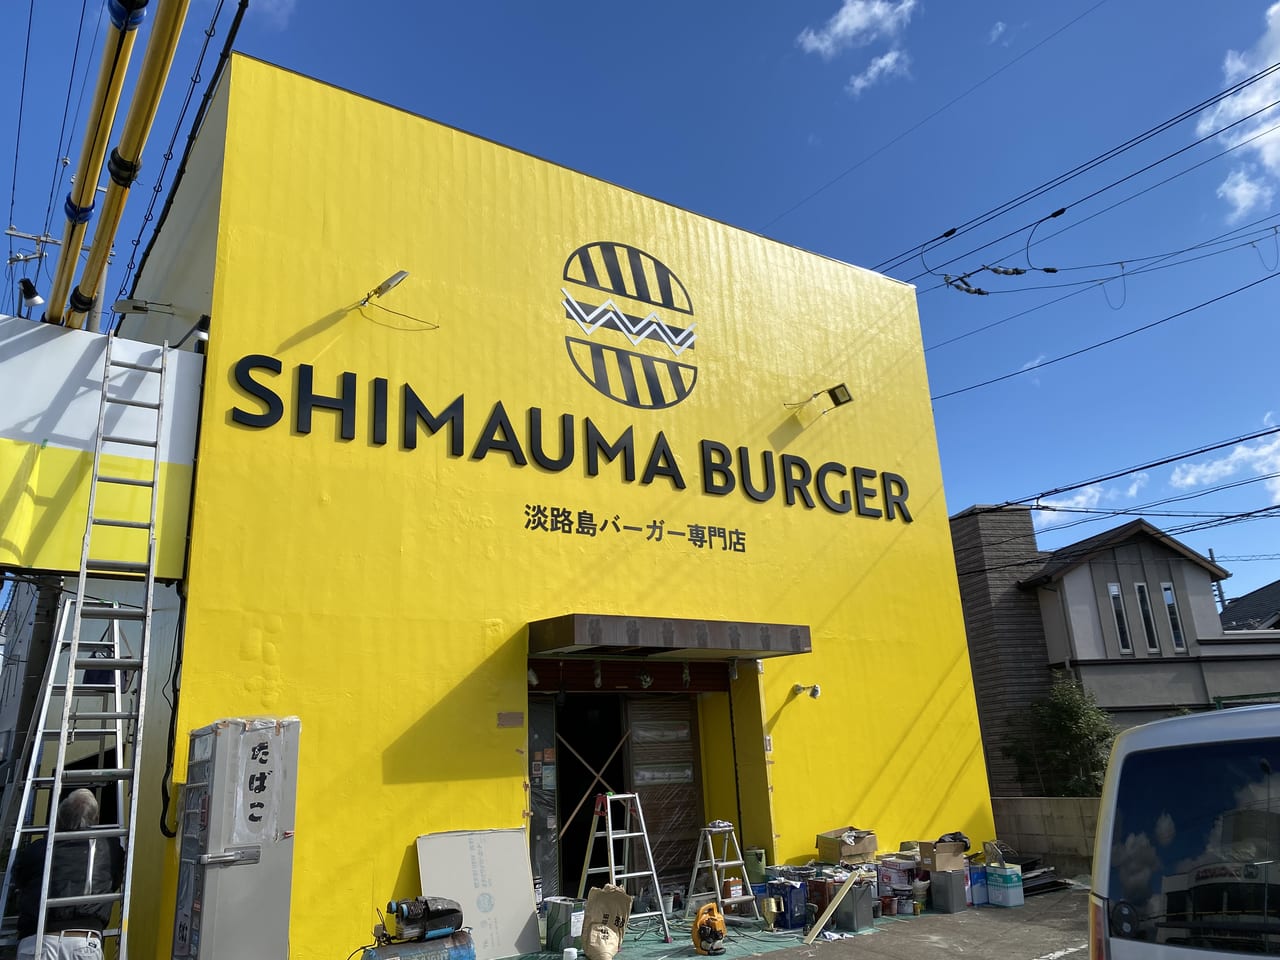 SHIMAMURA